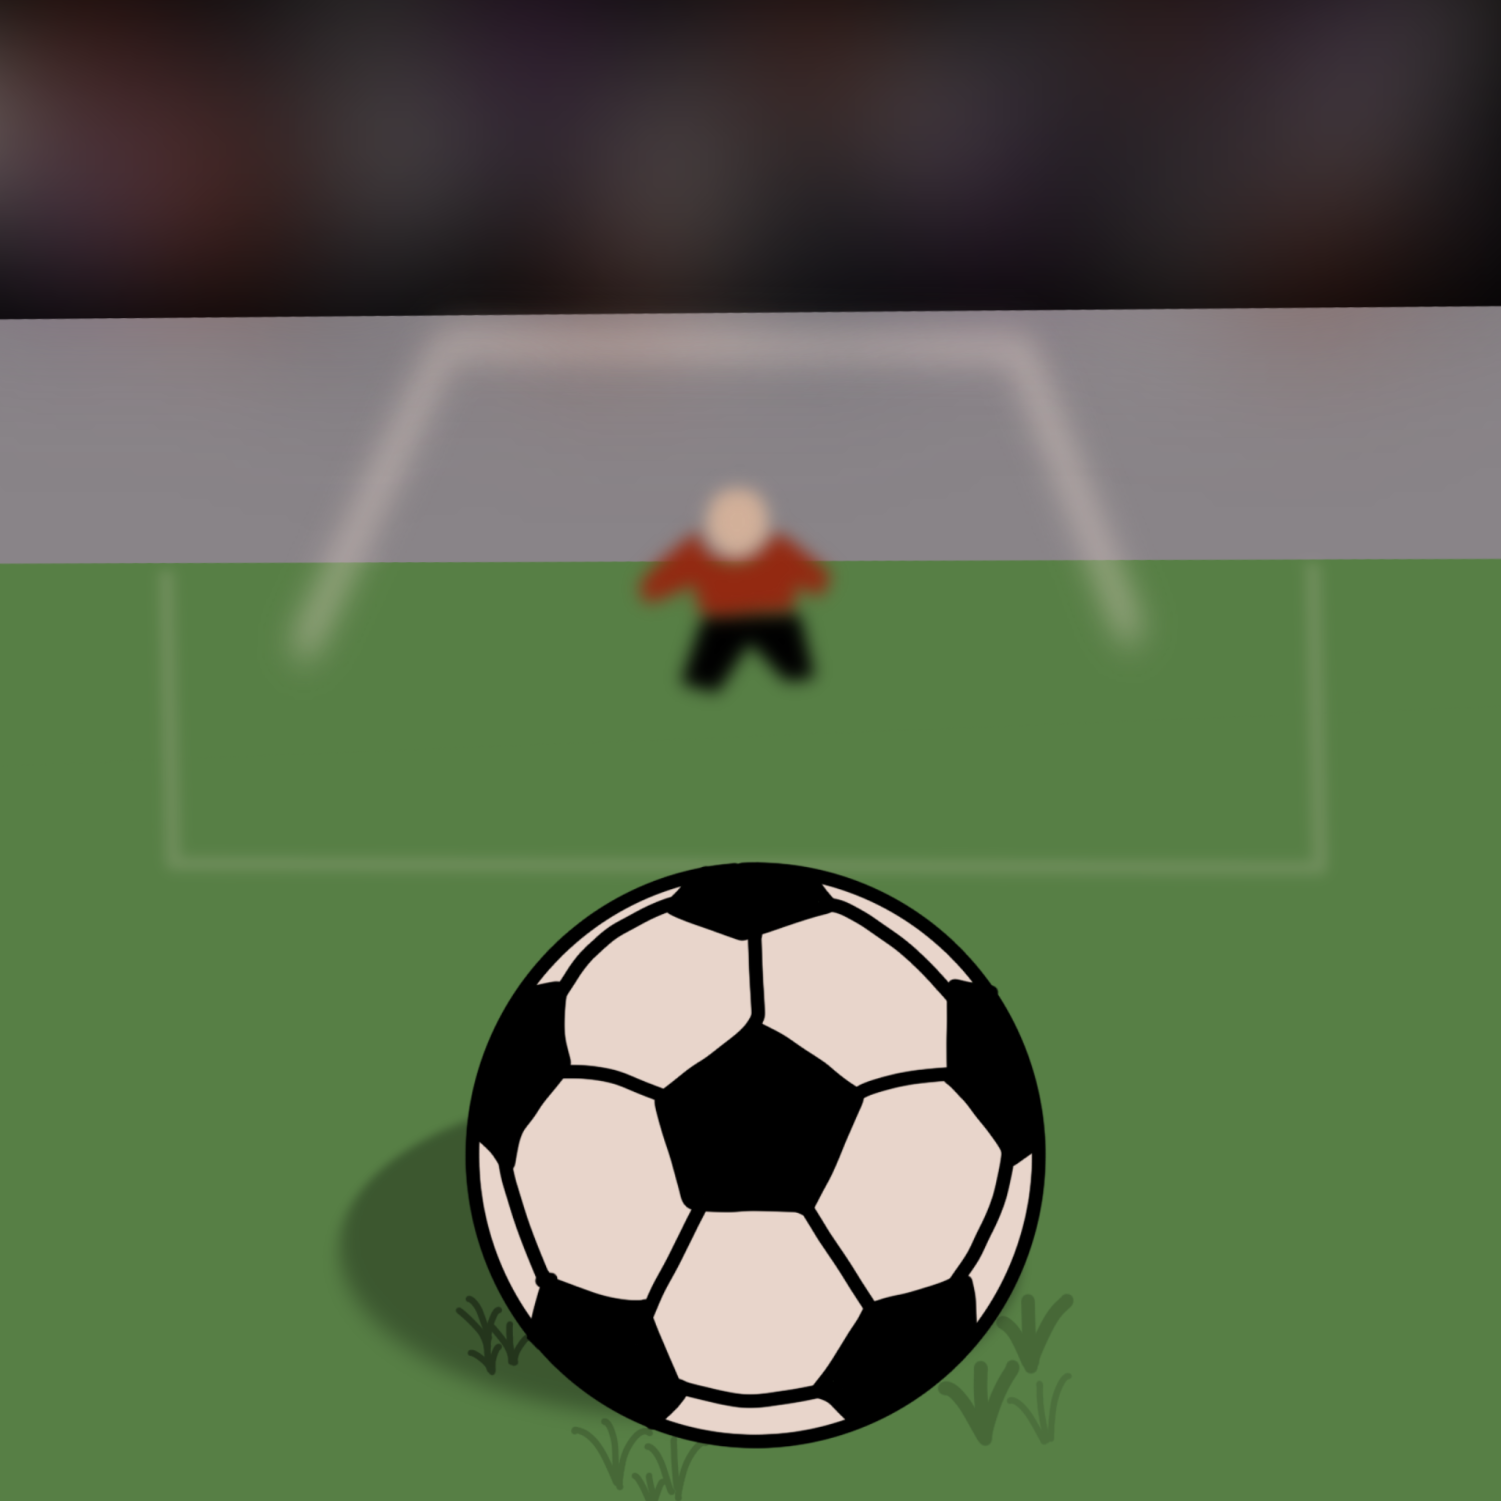 penalty kick online game｜TikTok Search